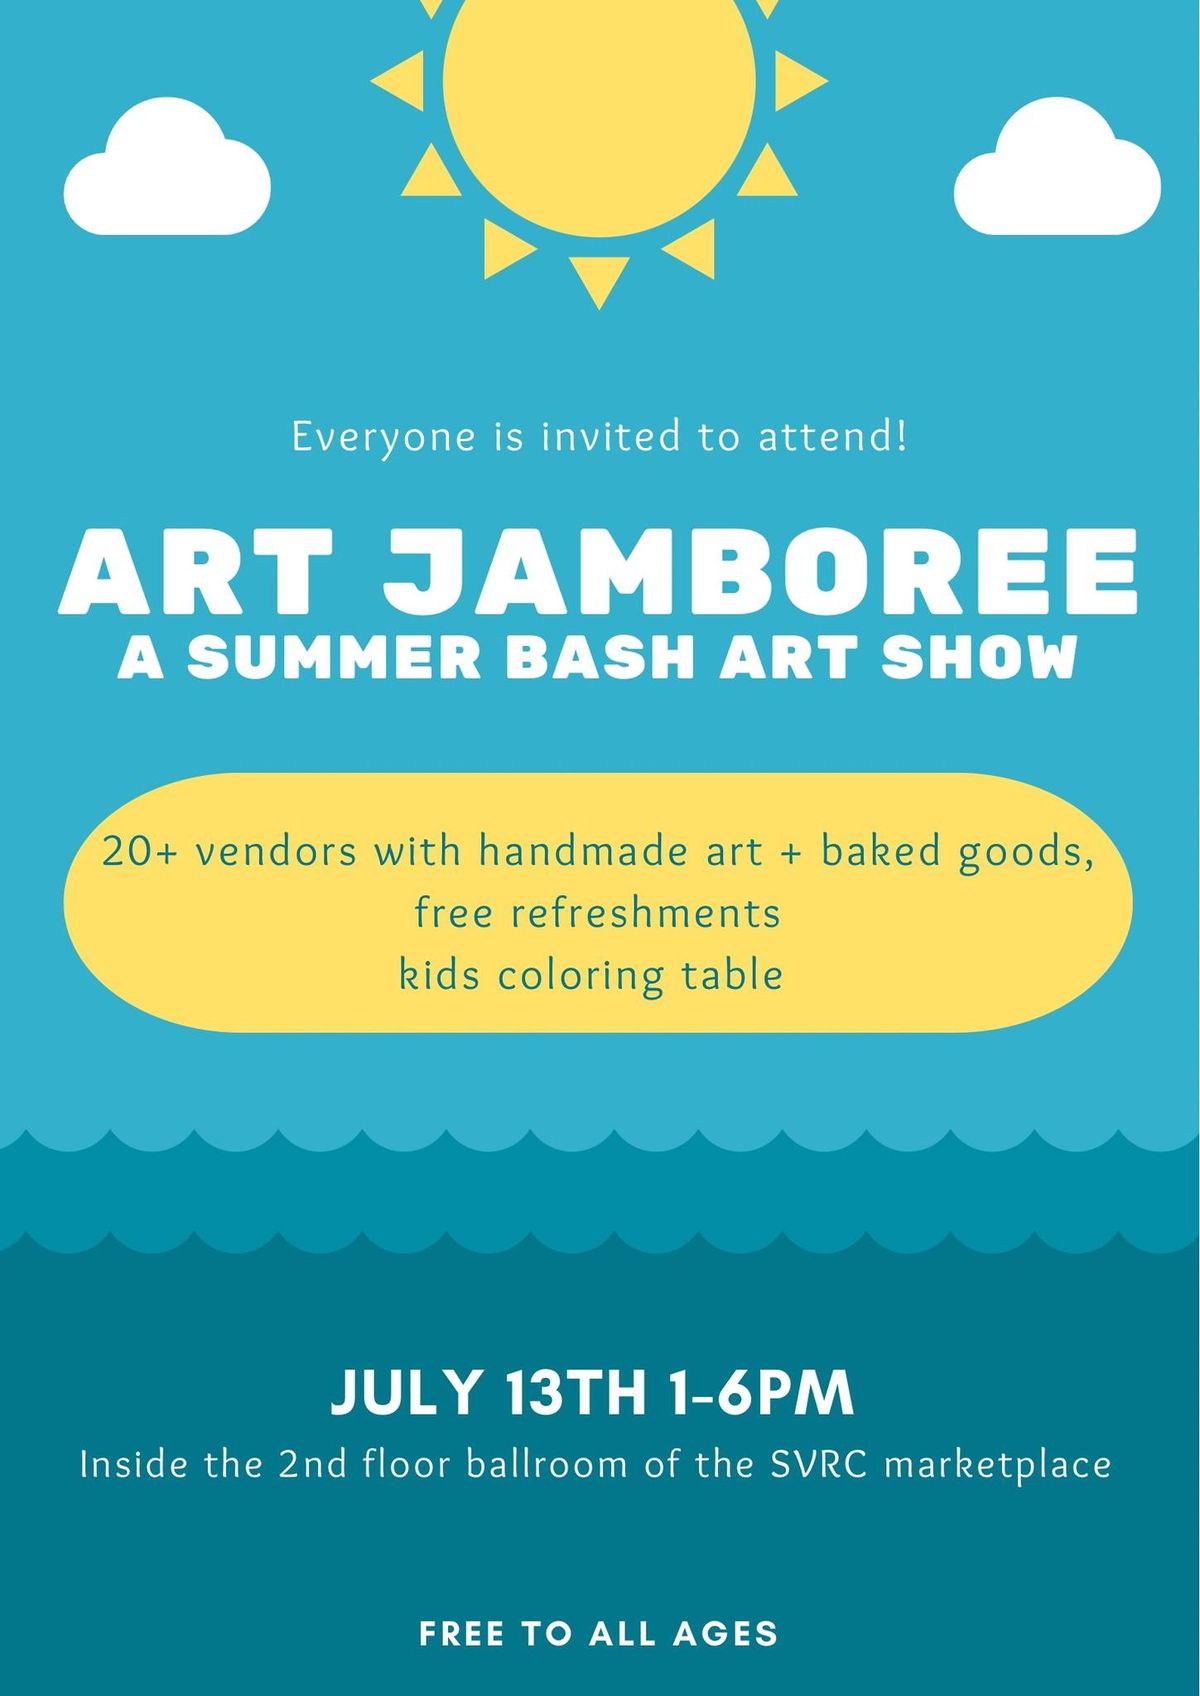 Art jamboree: a summer bash art show 